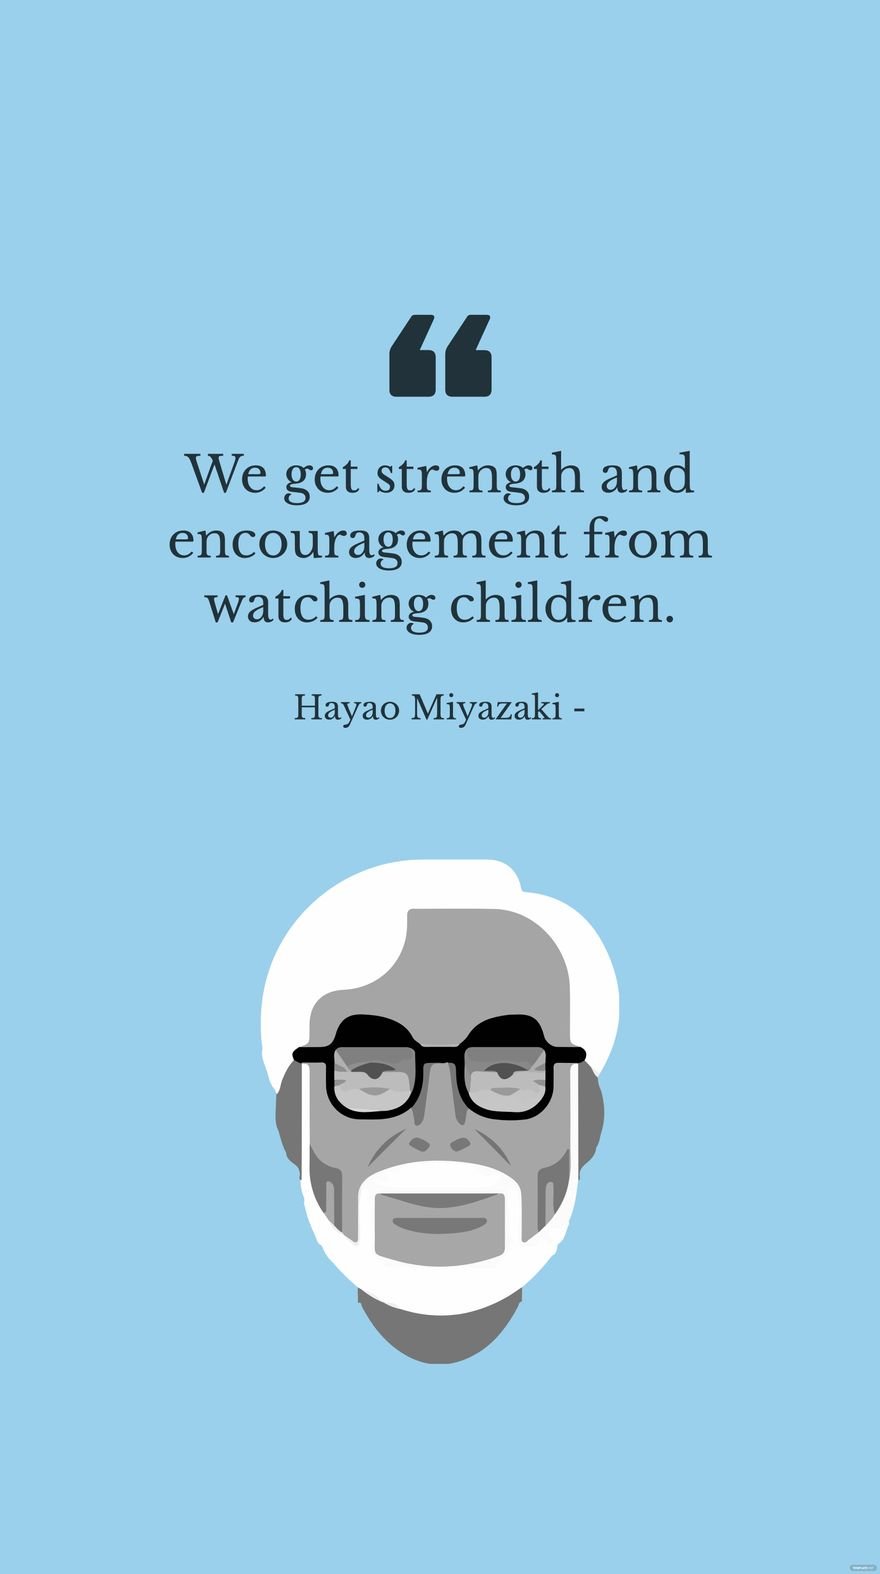 Hayao Miyazaki - We get strength and encouragement from watching children.